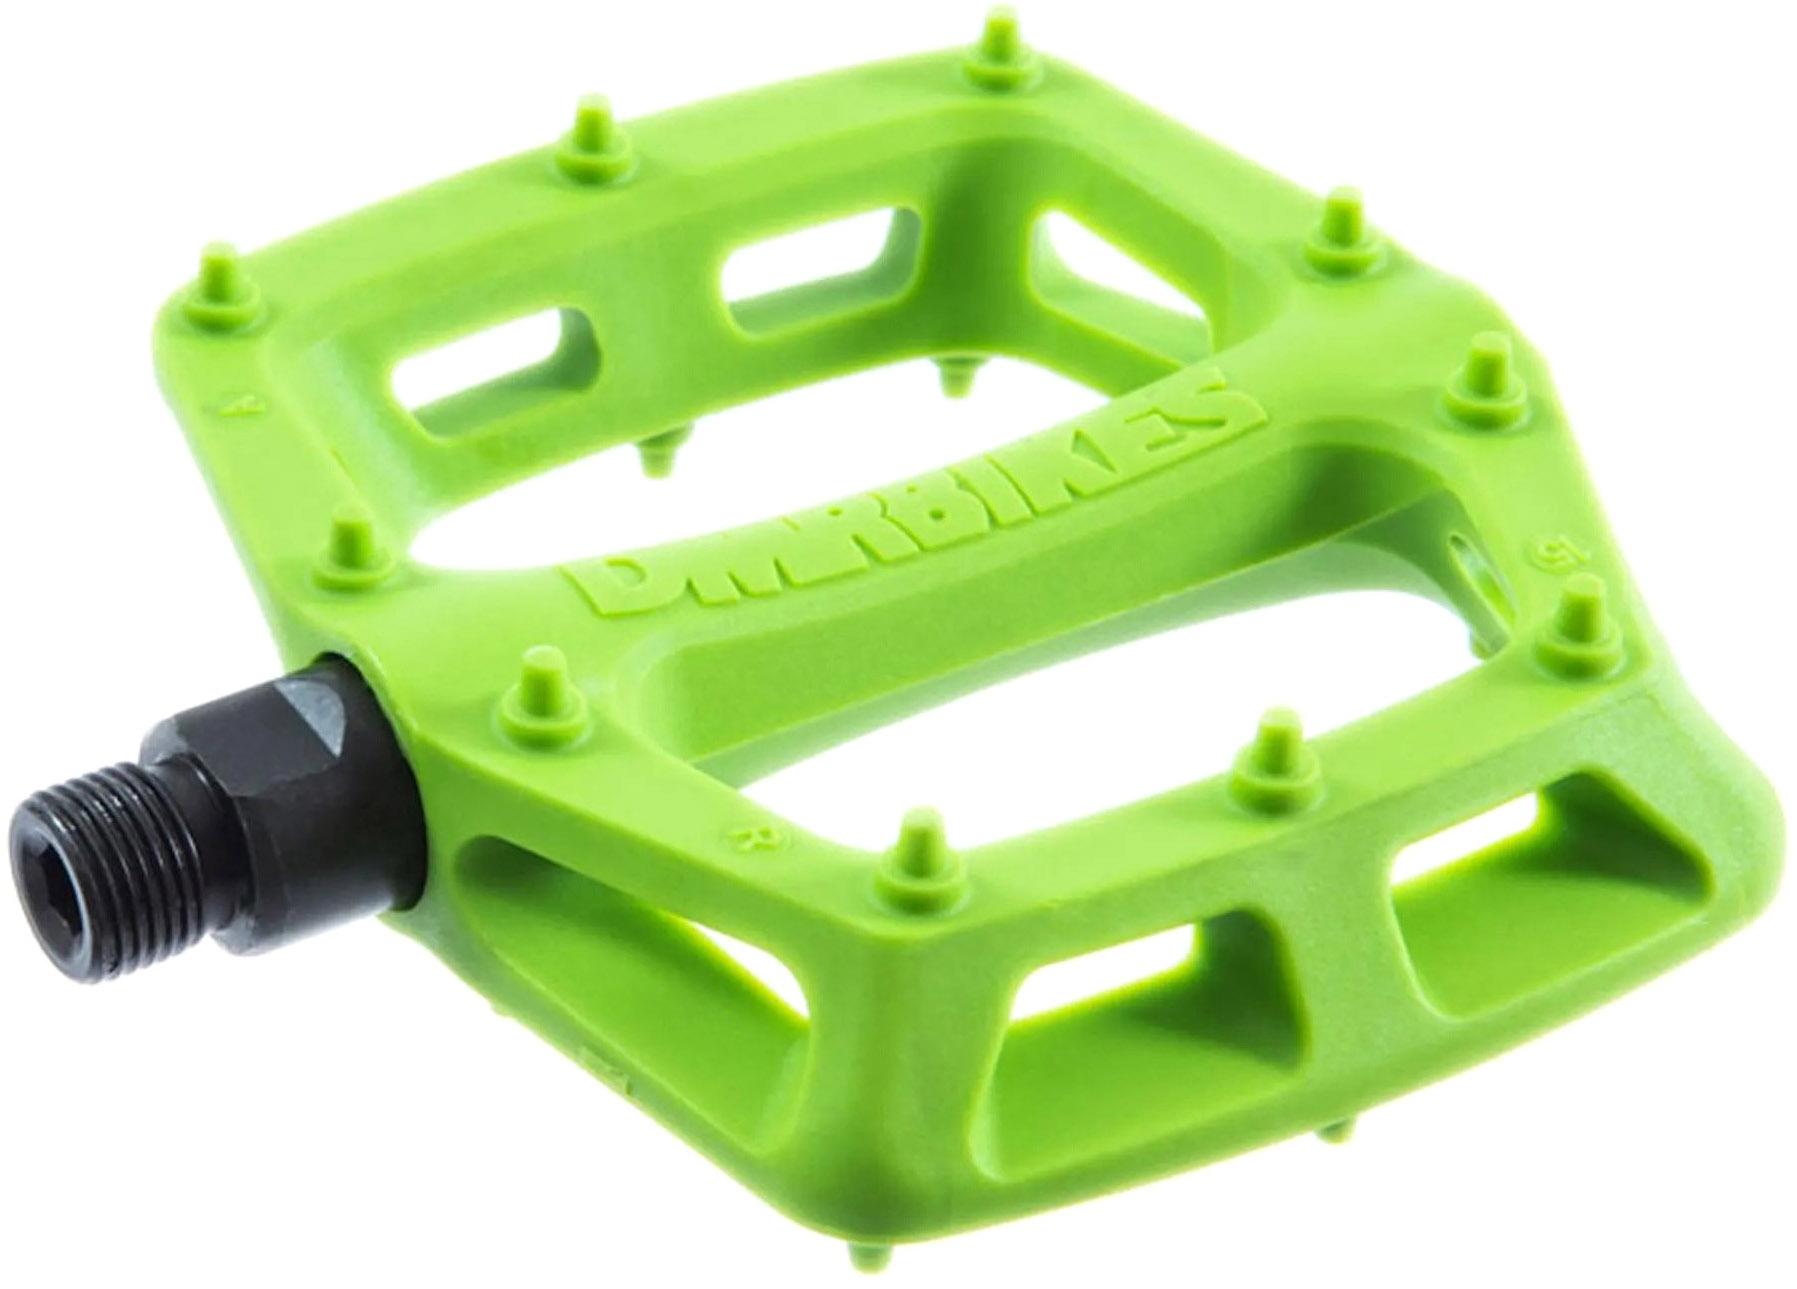 Dmr V6 Plastic Flat Pedals - Green